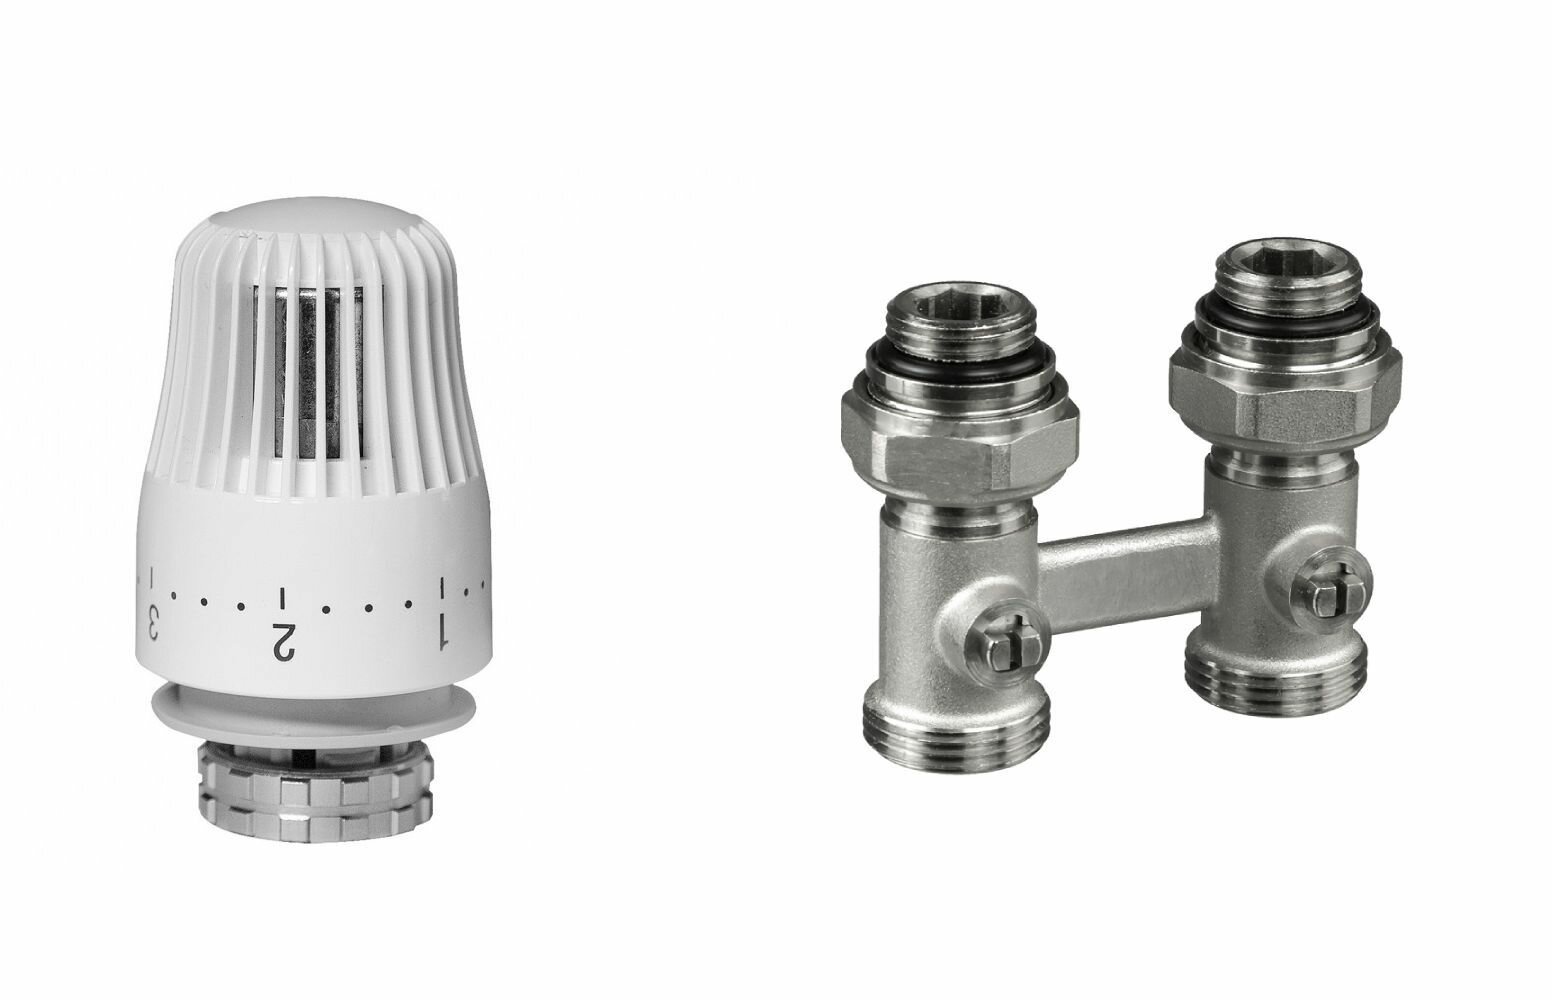 Ридан комплект для радиаторов с нижним подключением: клапан LV-KB Ду15 прямой + термоэлемент TR 84, Ду 1/2, угловой